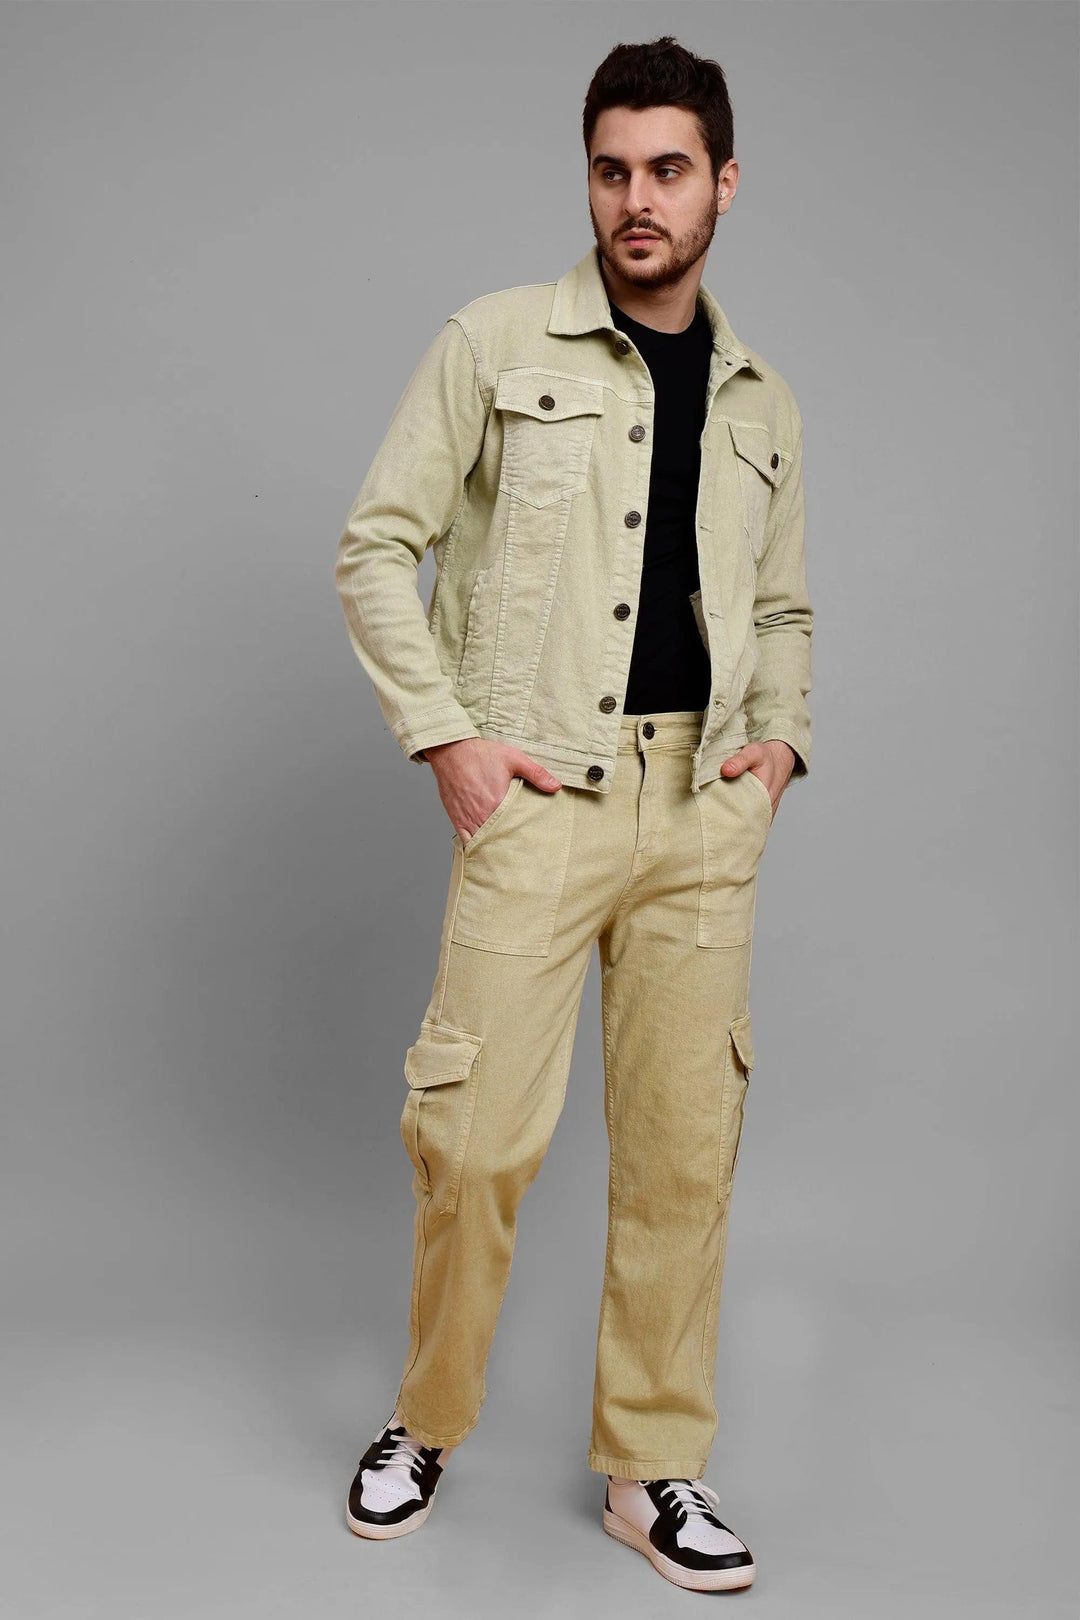 Regular Fit Pista Lime Denim Cargo & Jacket Co-ord Set for Men - Peplos Jeans 